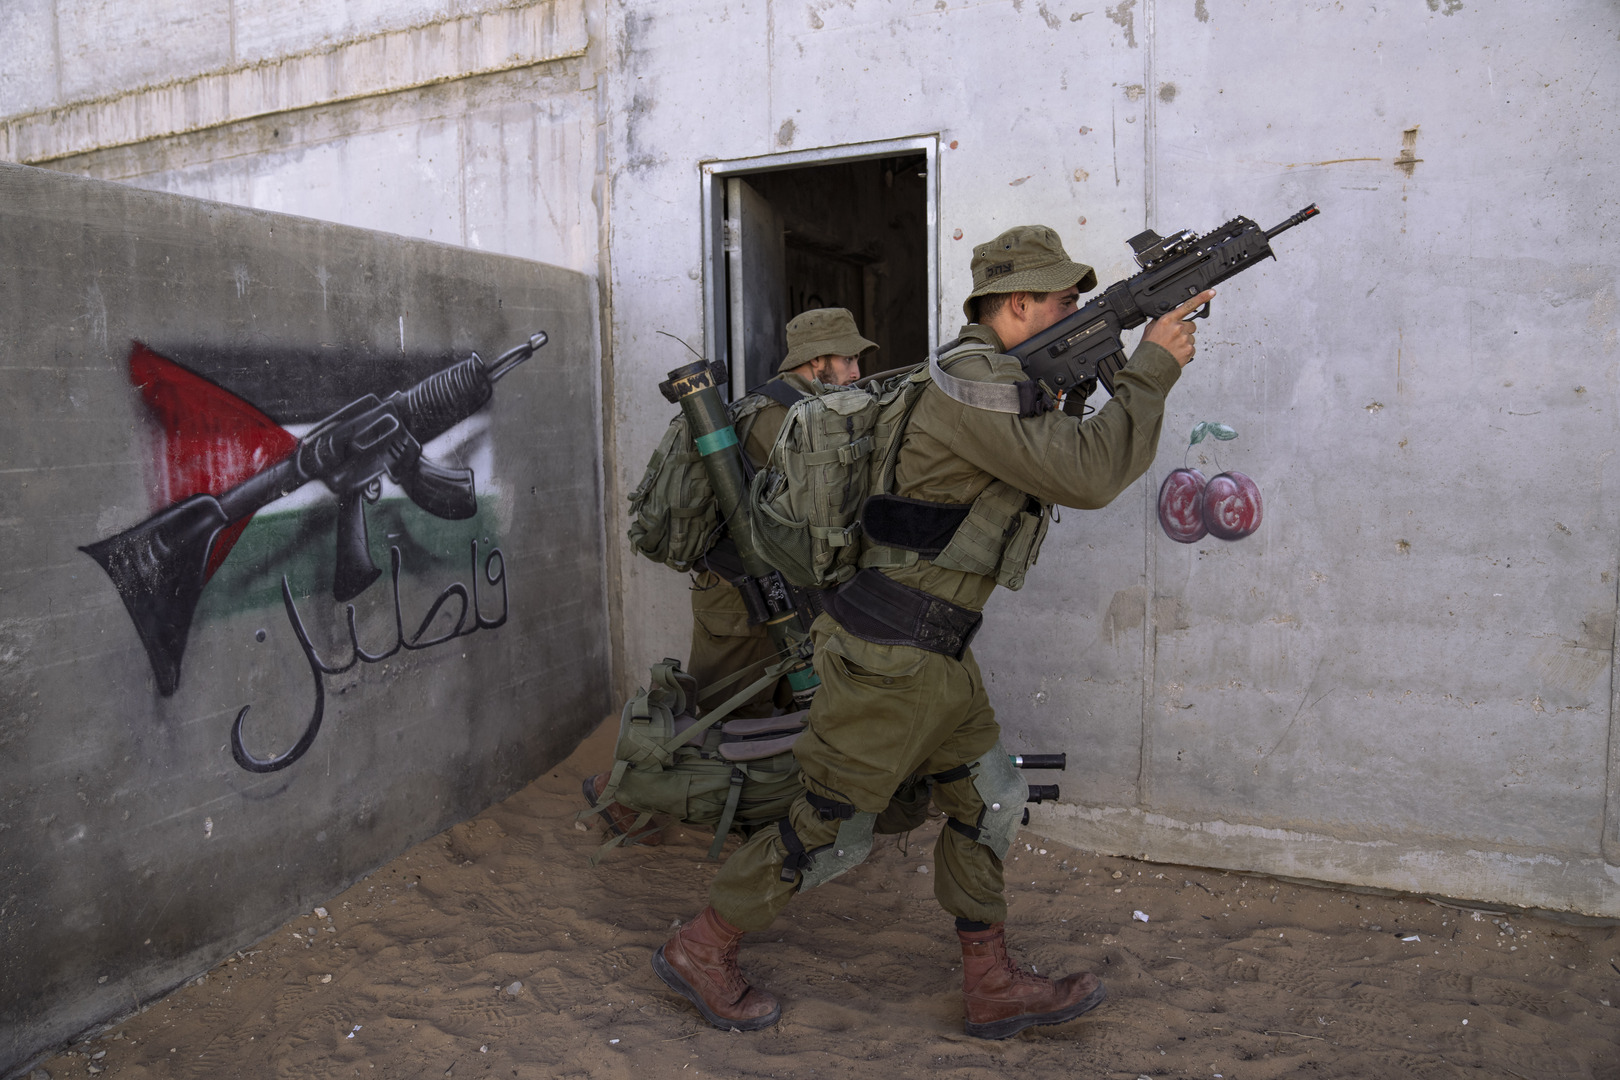 مقتل 6 فلسطينيين خلال اشتباكات عنيفة مع جنود إسرائيليين في جنين وإسرائيل تعلن إصابة عدد من جنودها